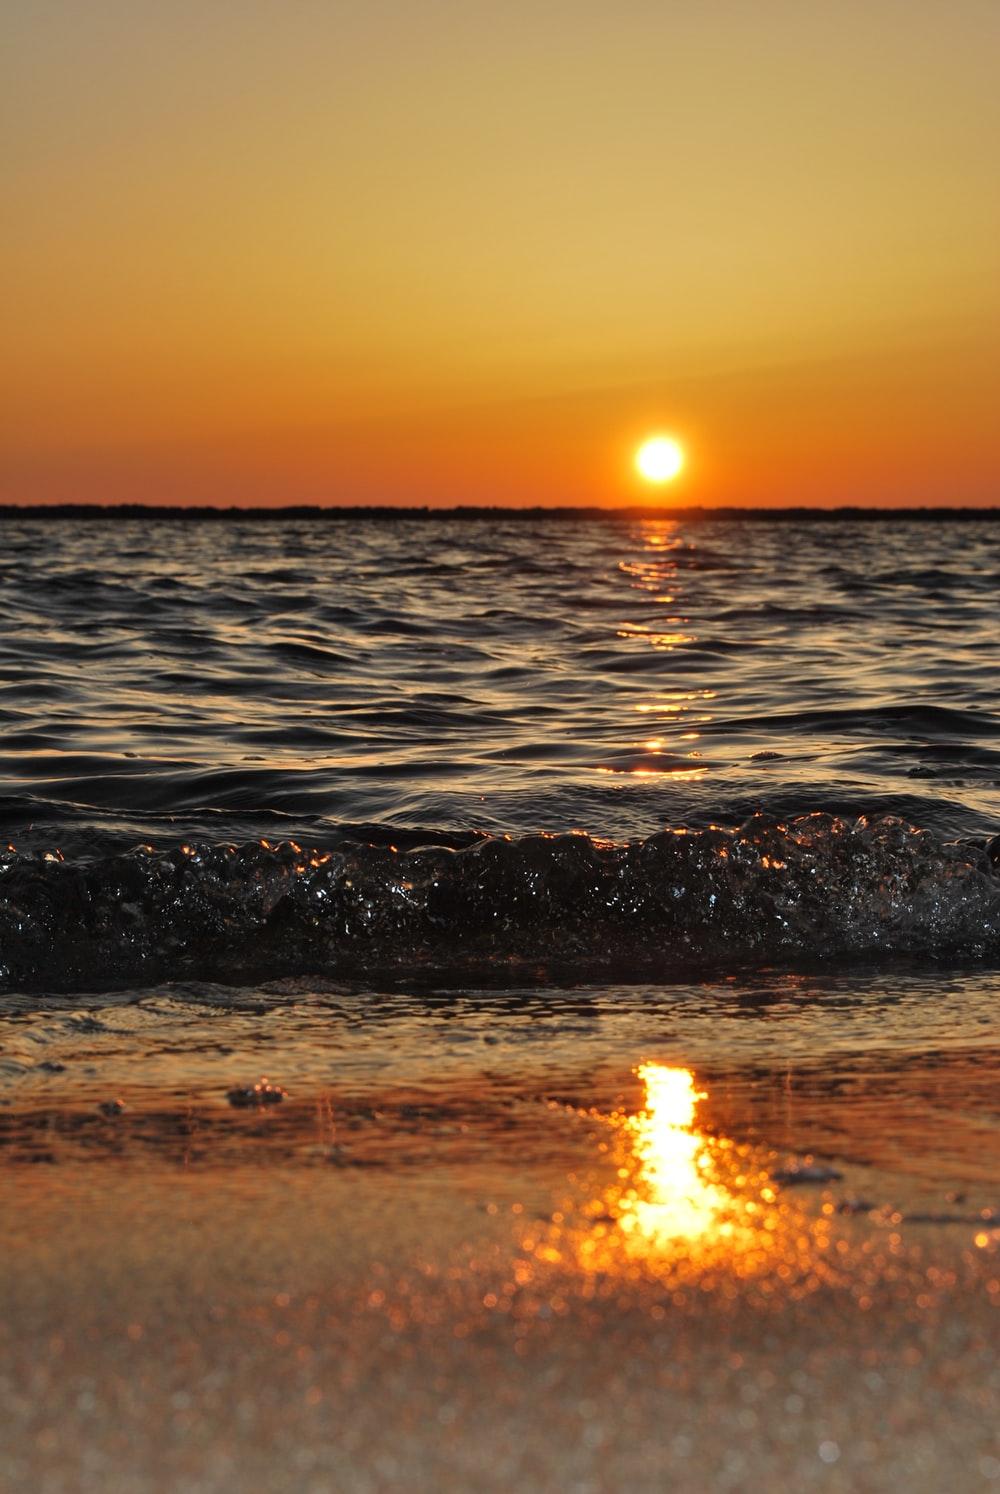 Sunset Image [Stunning!]. Download Free Image